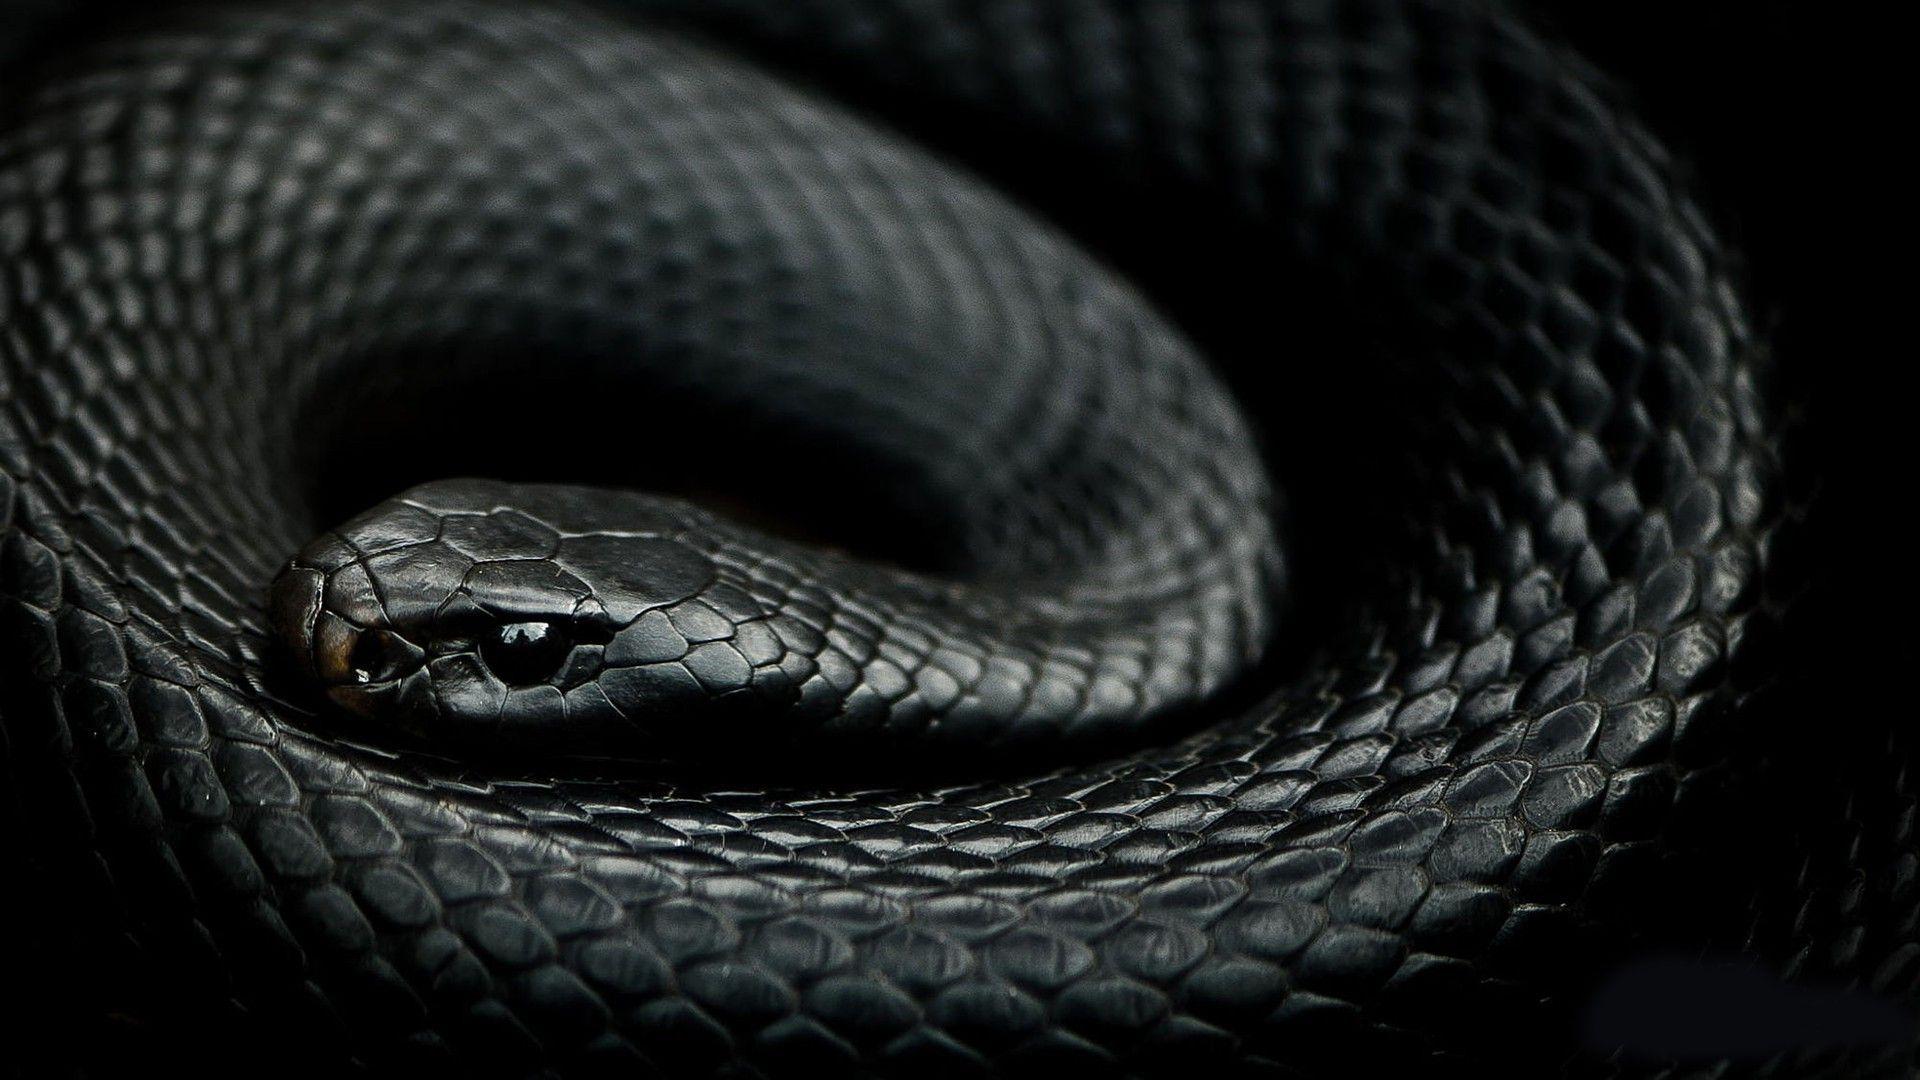 100 Free Black Snake  Snake Images  Pixabay